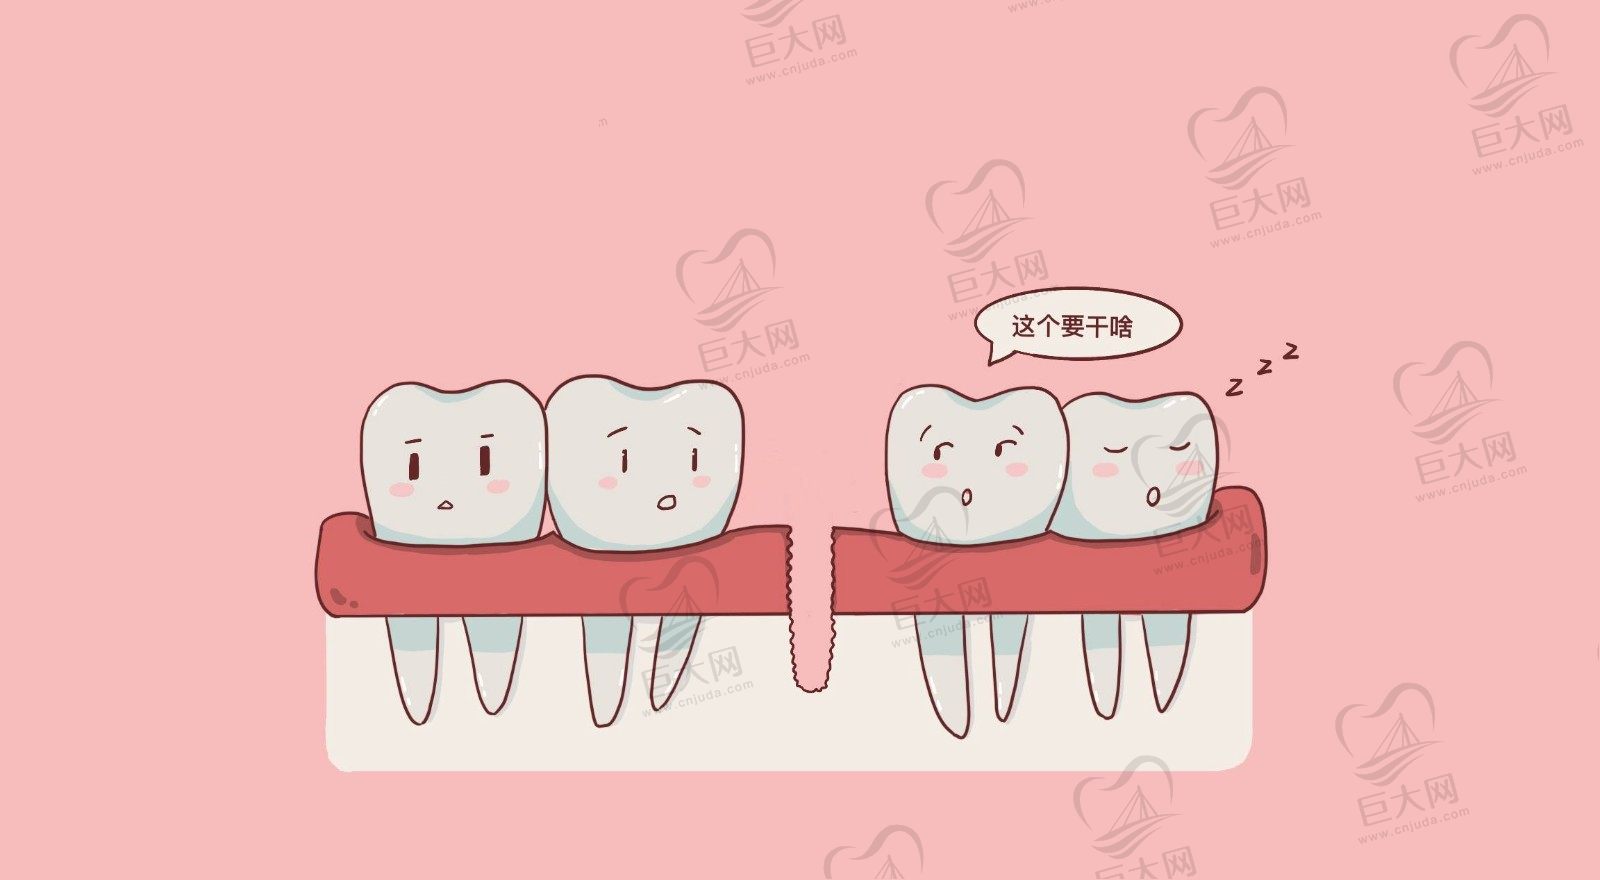 重庆种植牙技术好的口腔医院推荐,榜上5家好评多,案 例口碑好!